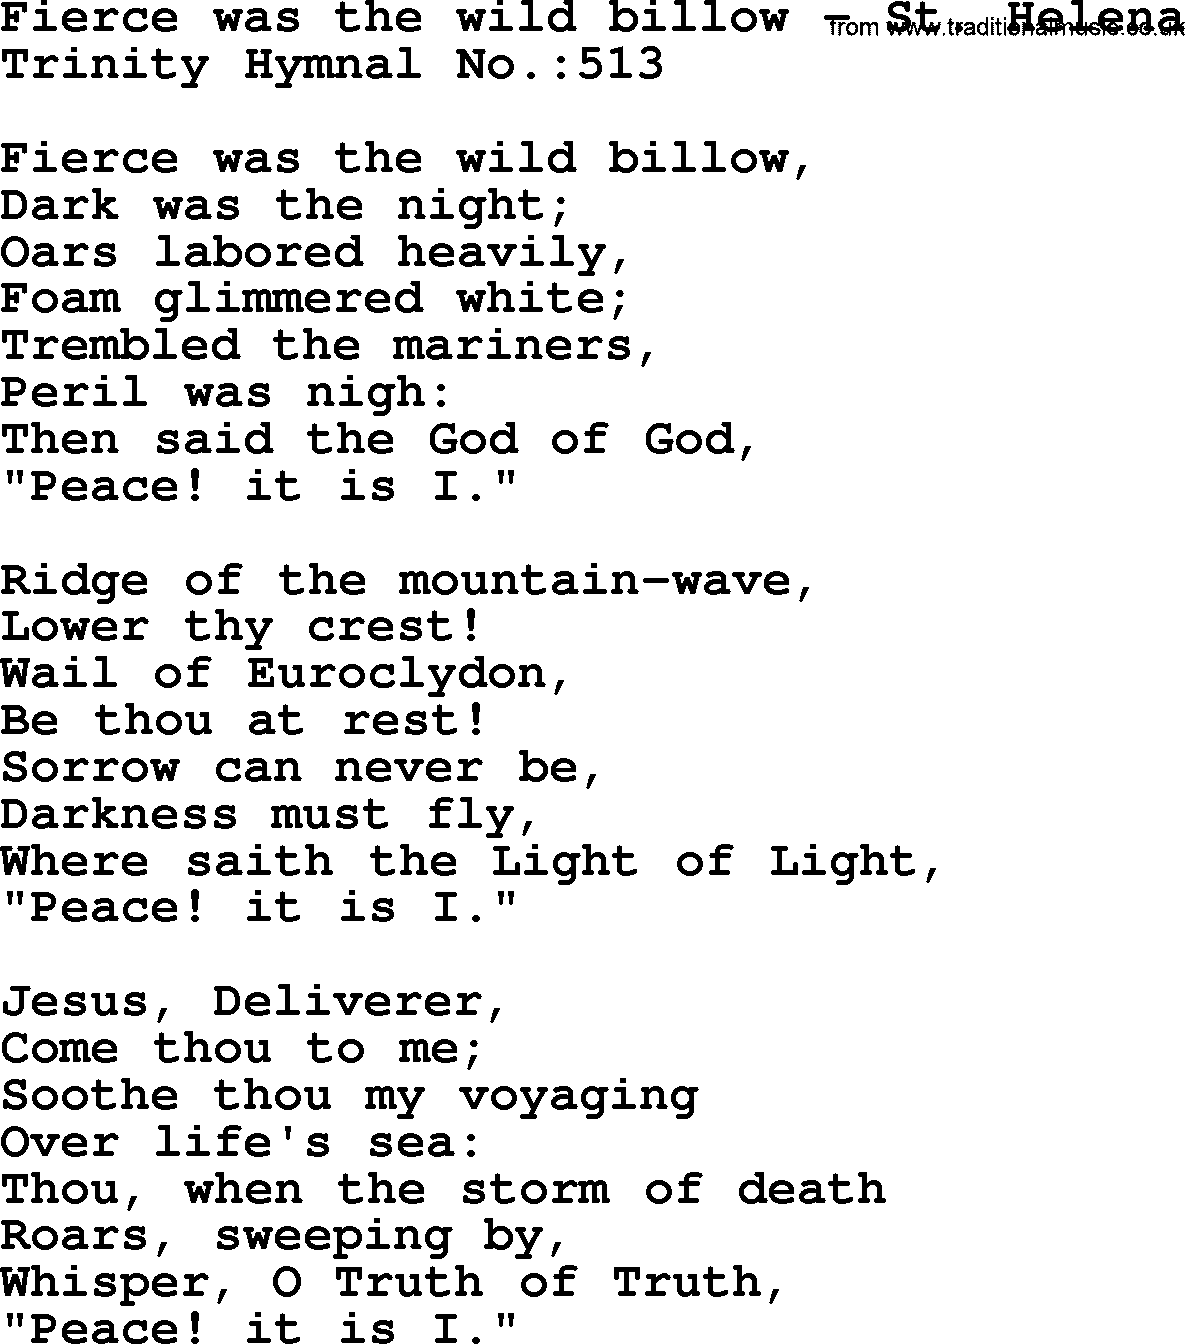 Trinity Hymnal Hymn: Fierce Was The Wild Billow--St. Helena, lyrics with midi music